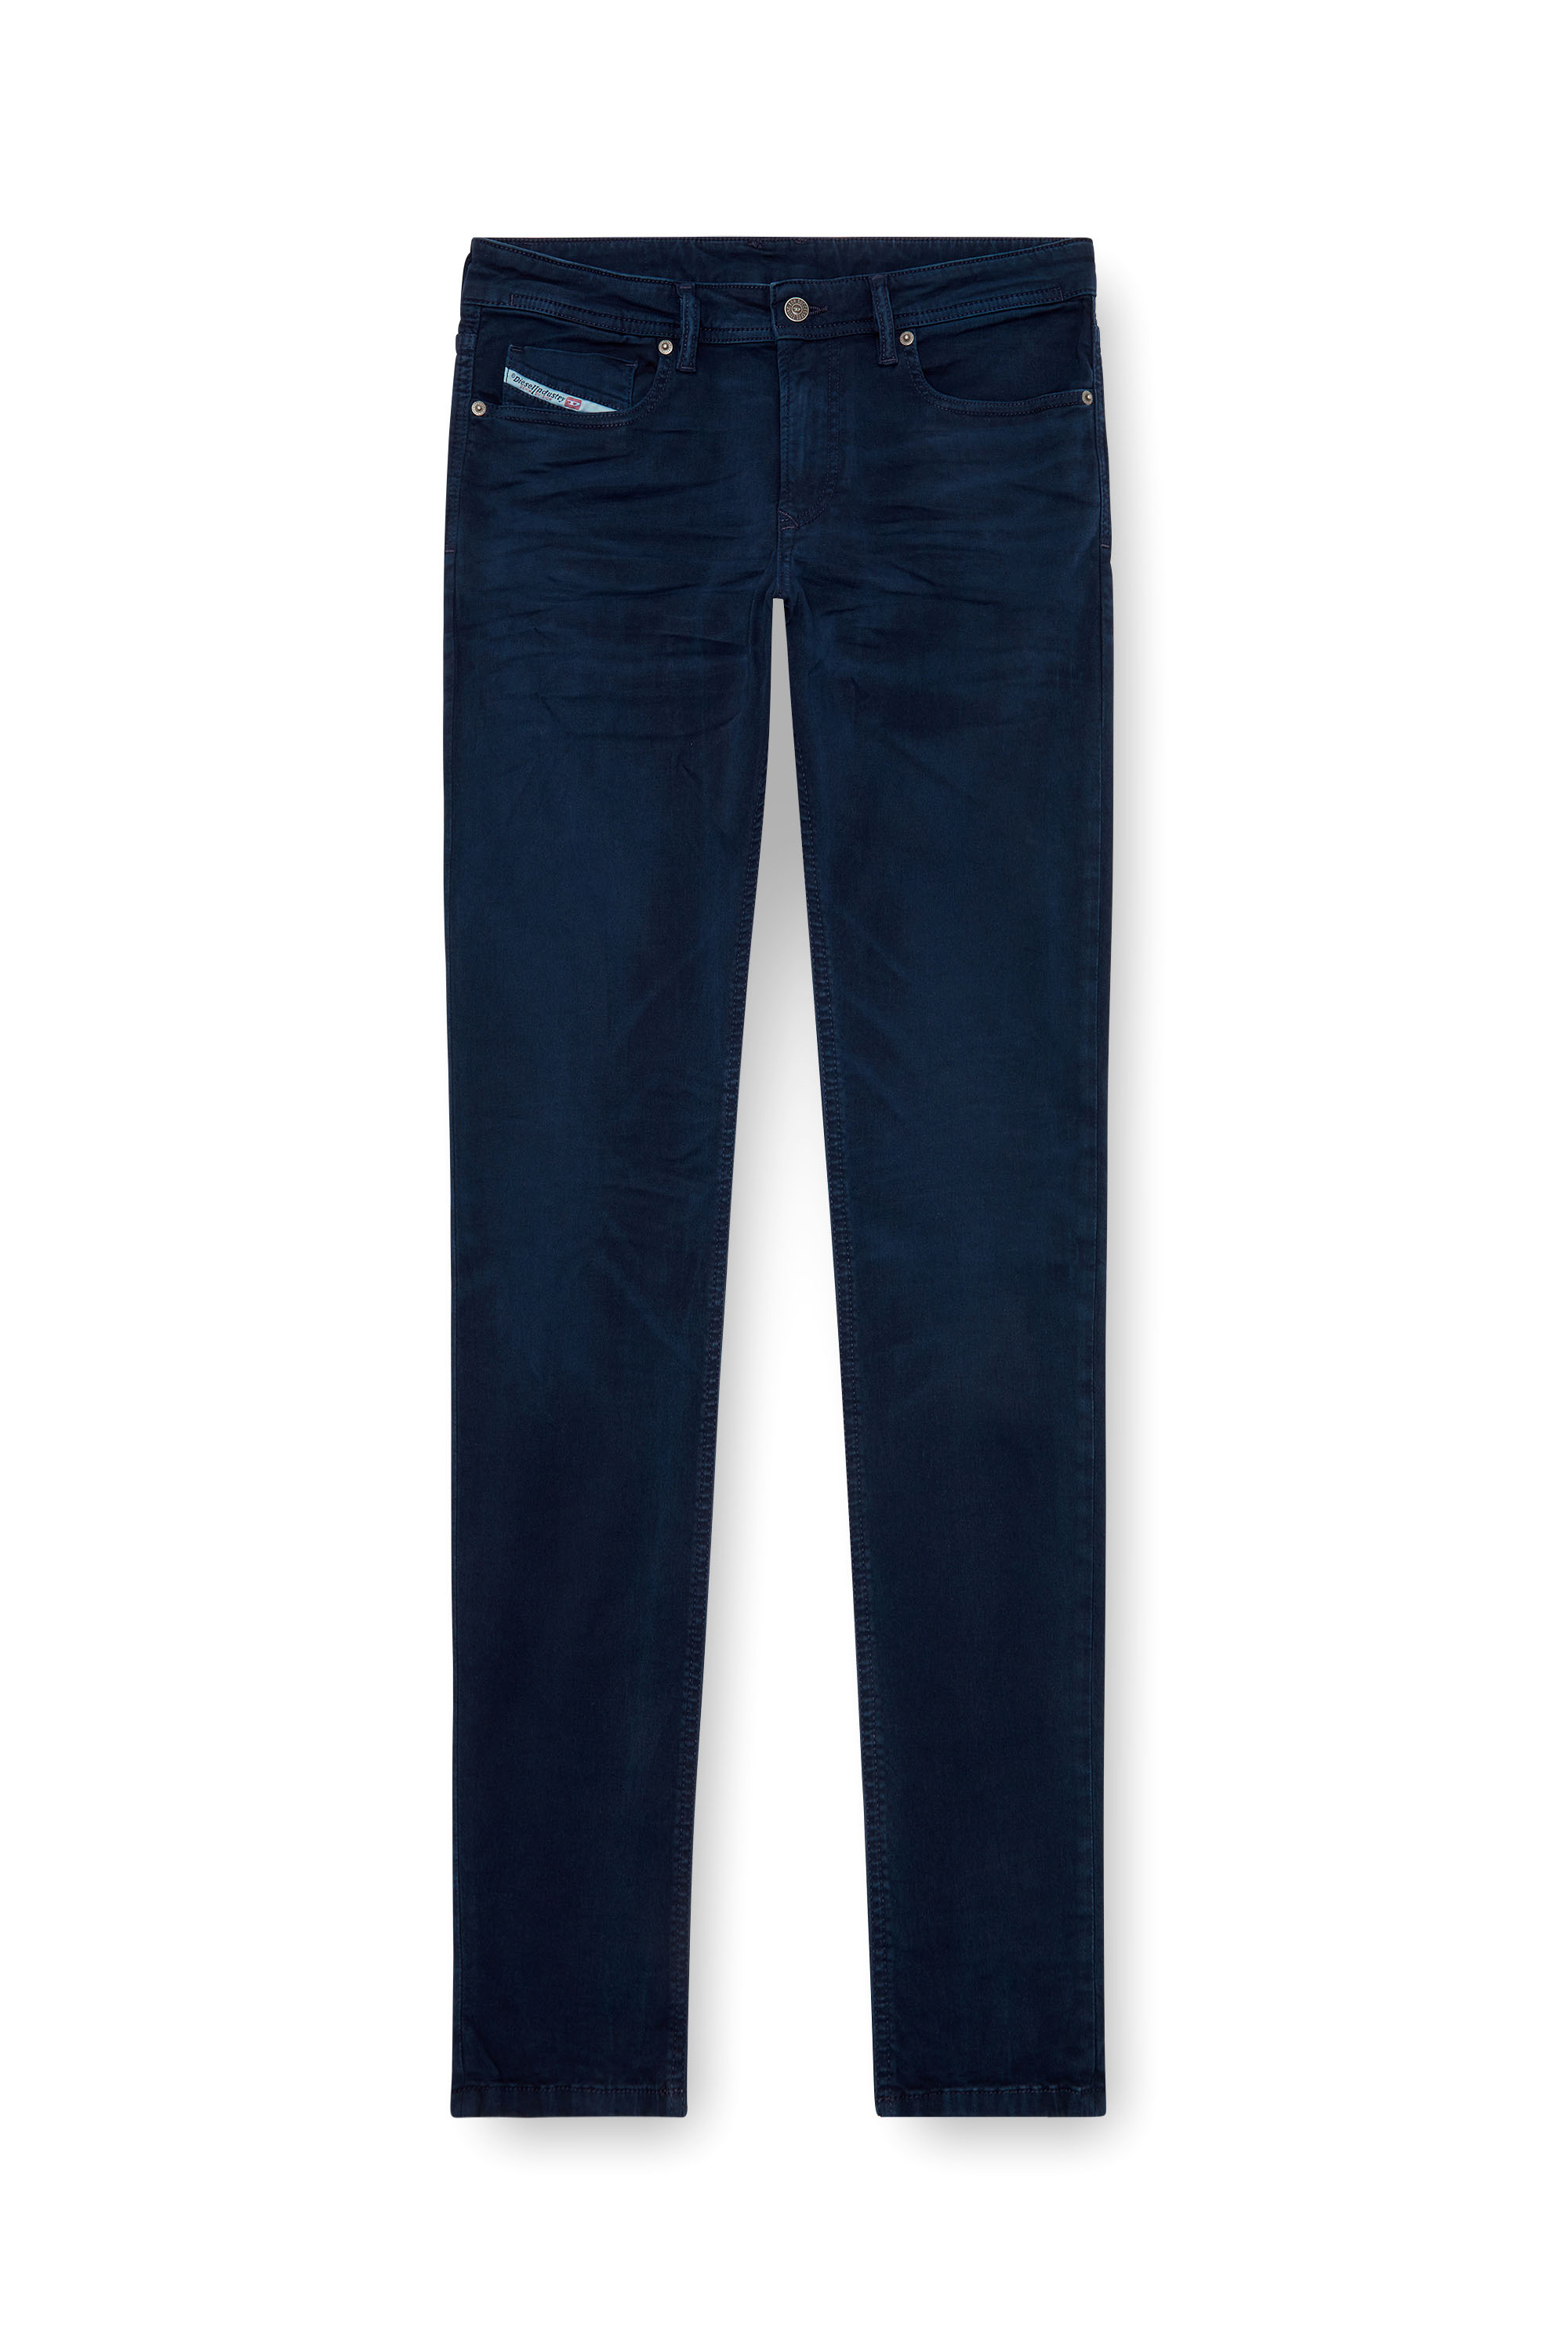 Diesel - Man Skinny Jeans 1979 Sleenker 0ENAK, Dark Blue - Image 5